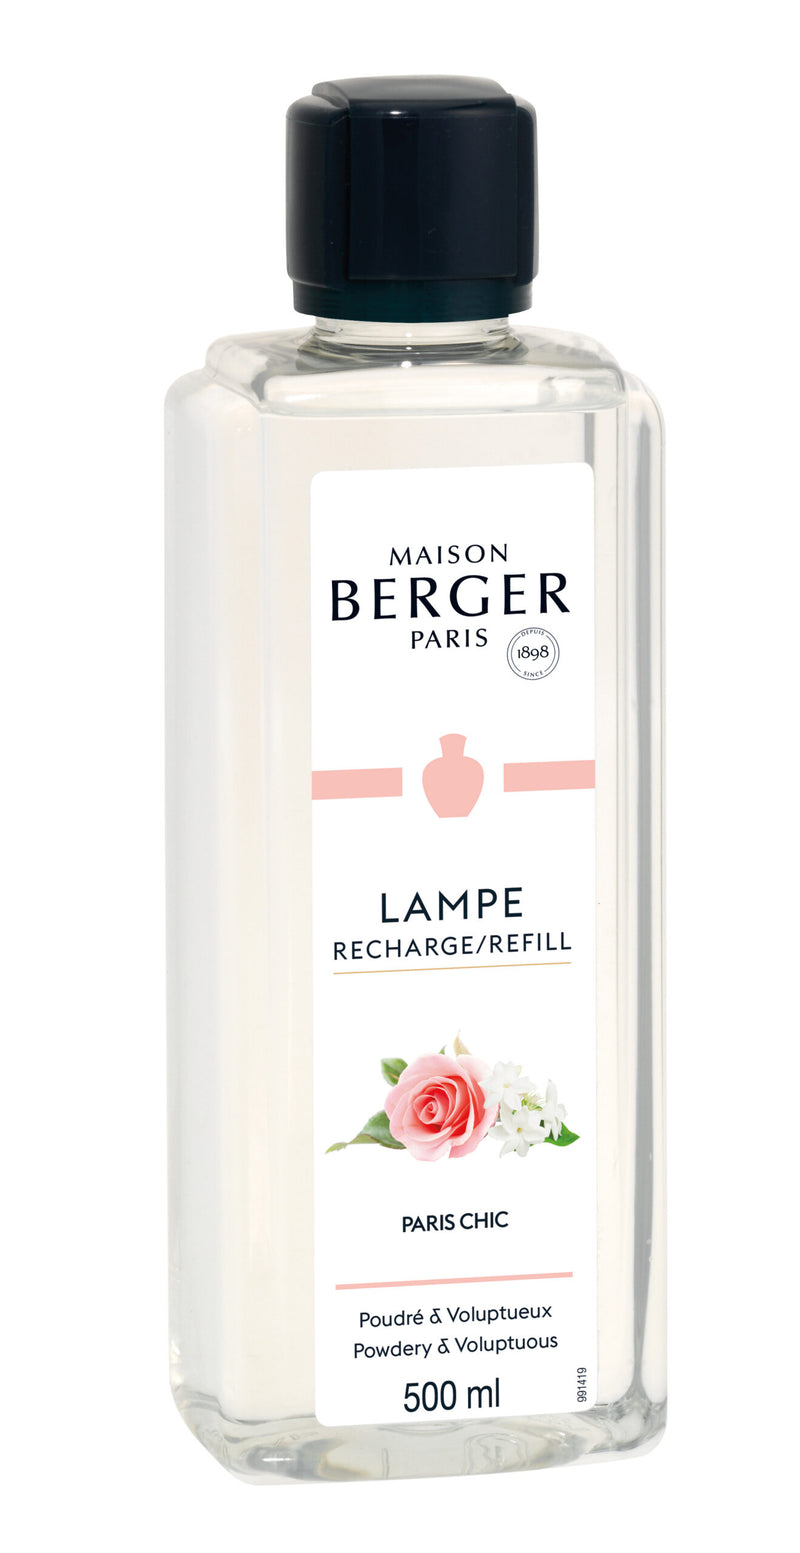 Lampe Berger huisparfum 500 ml - Paris Chic